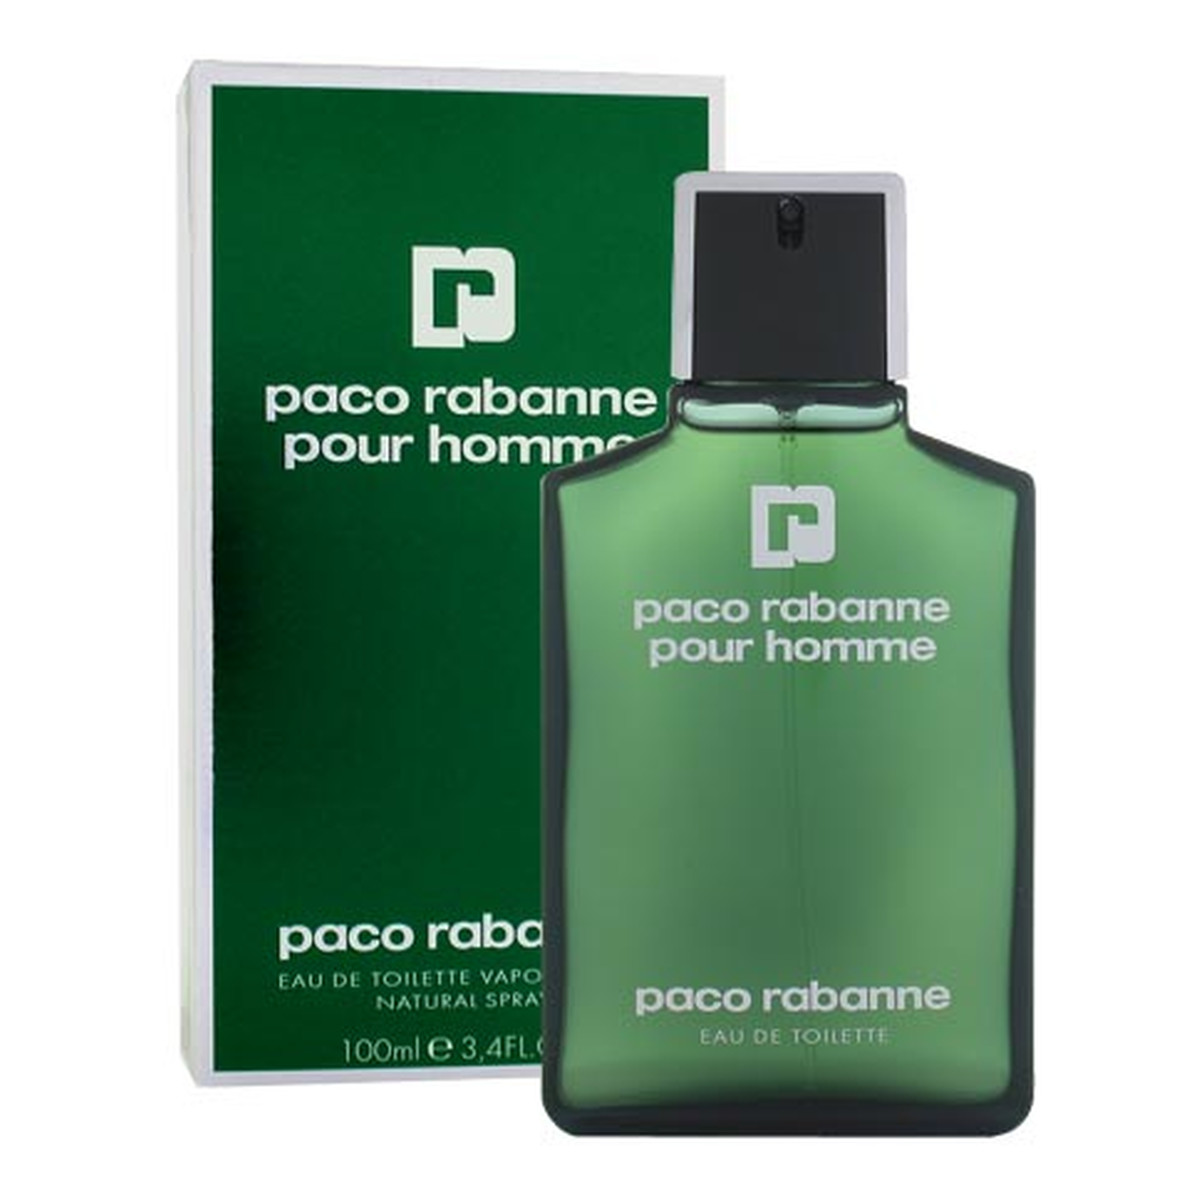 Paco Rabanne Pour Homme woda toaletowa 200ml